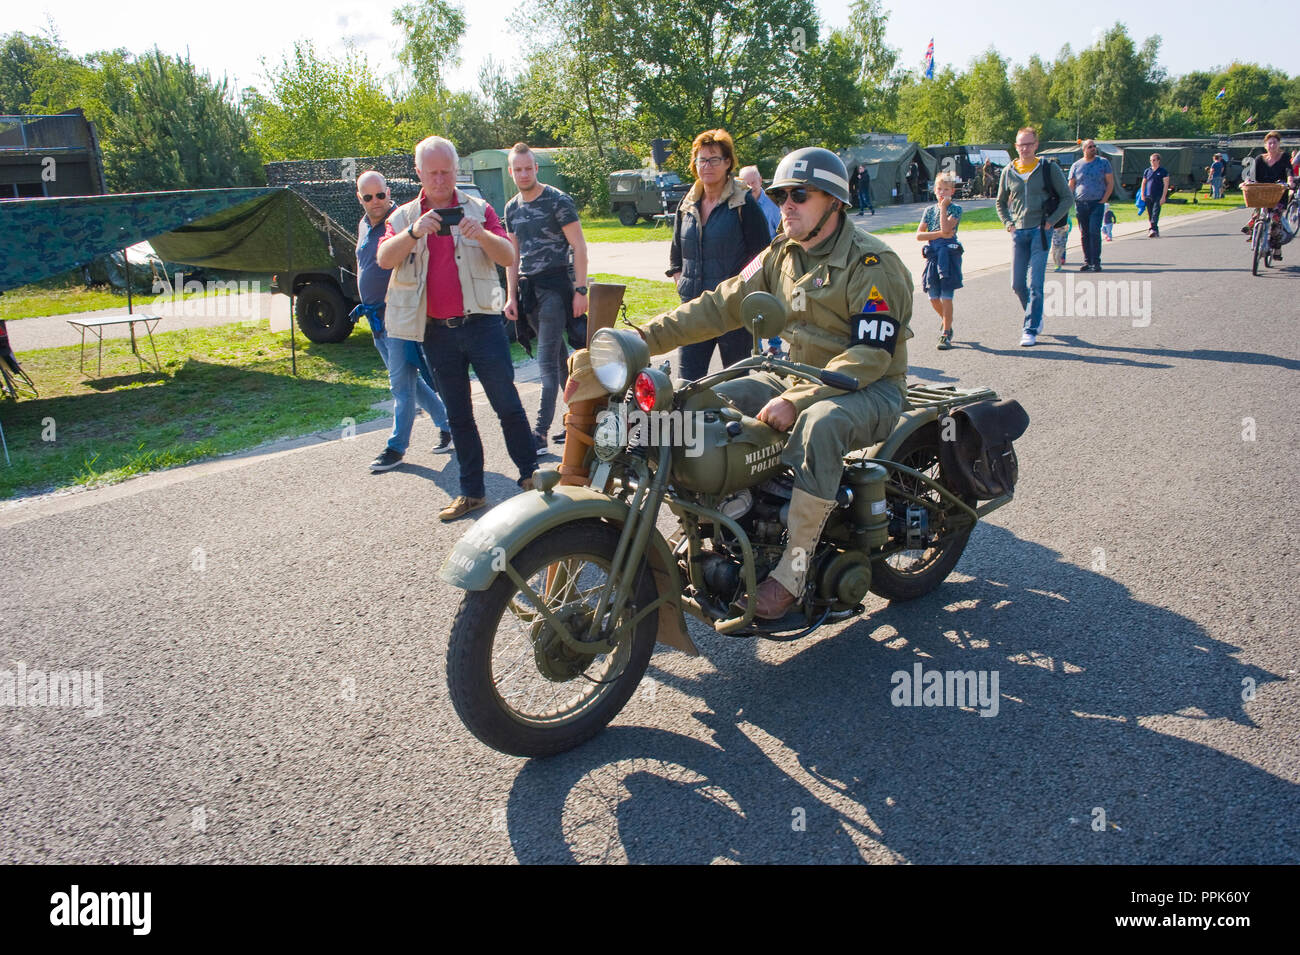 ENSCHEDE, Pays-Bas - le 01 sept., 2018 : une moto en passant par l'armée militaire au cours d'un spectacle. Banque D'Images